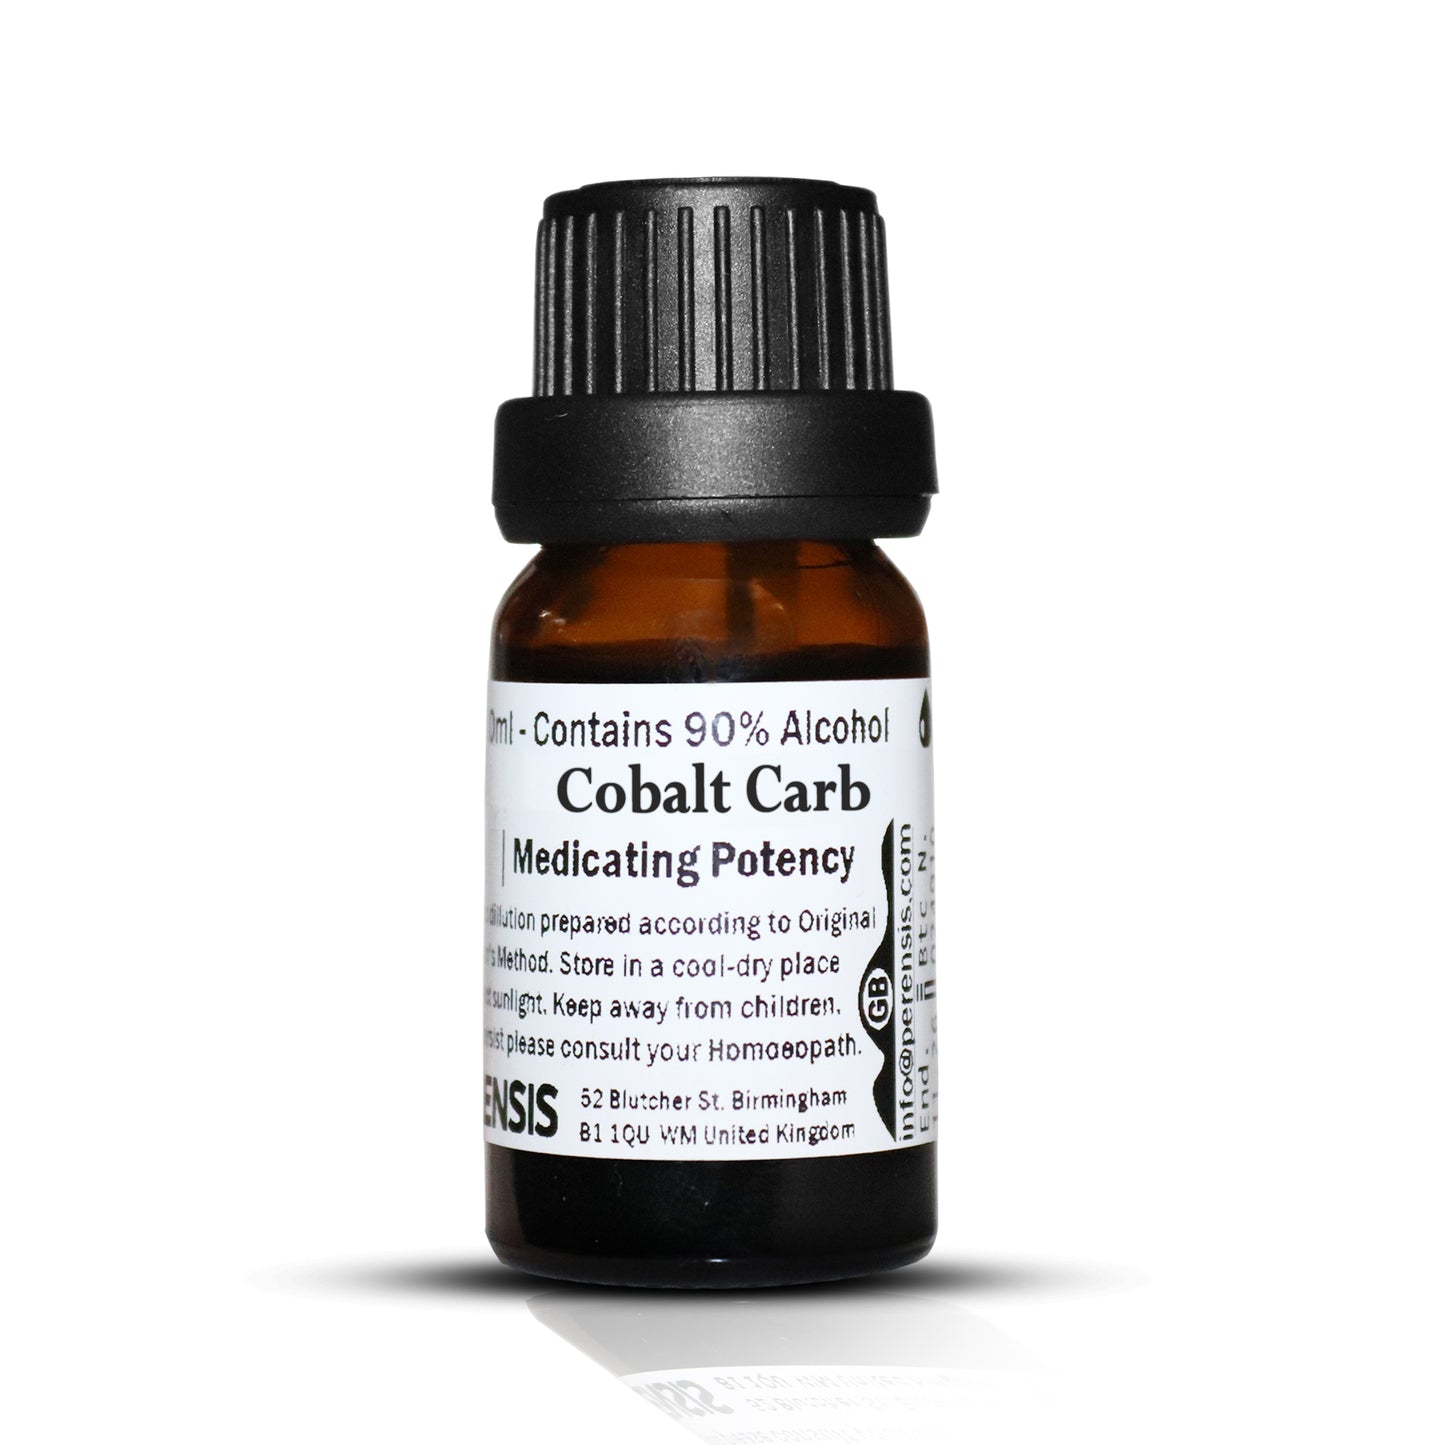 Cobalt Carb